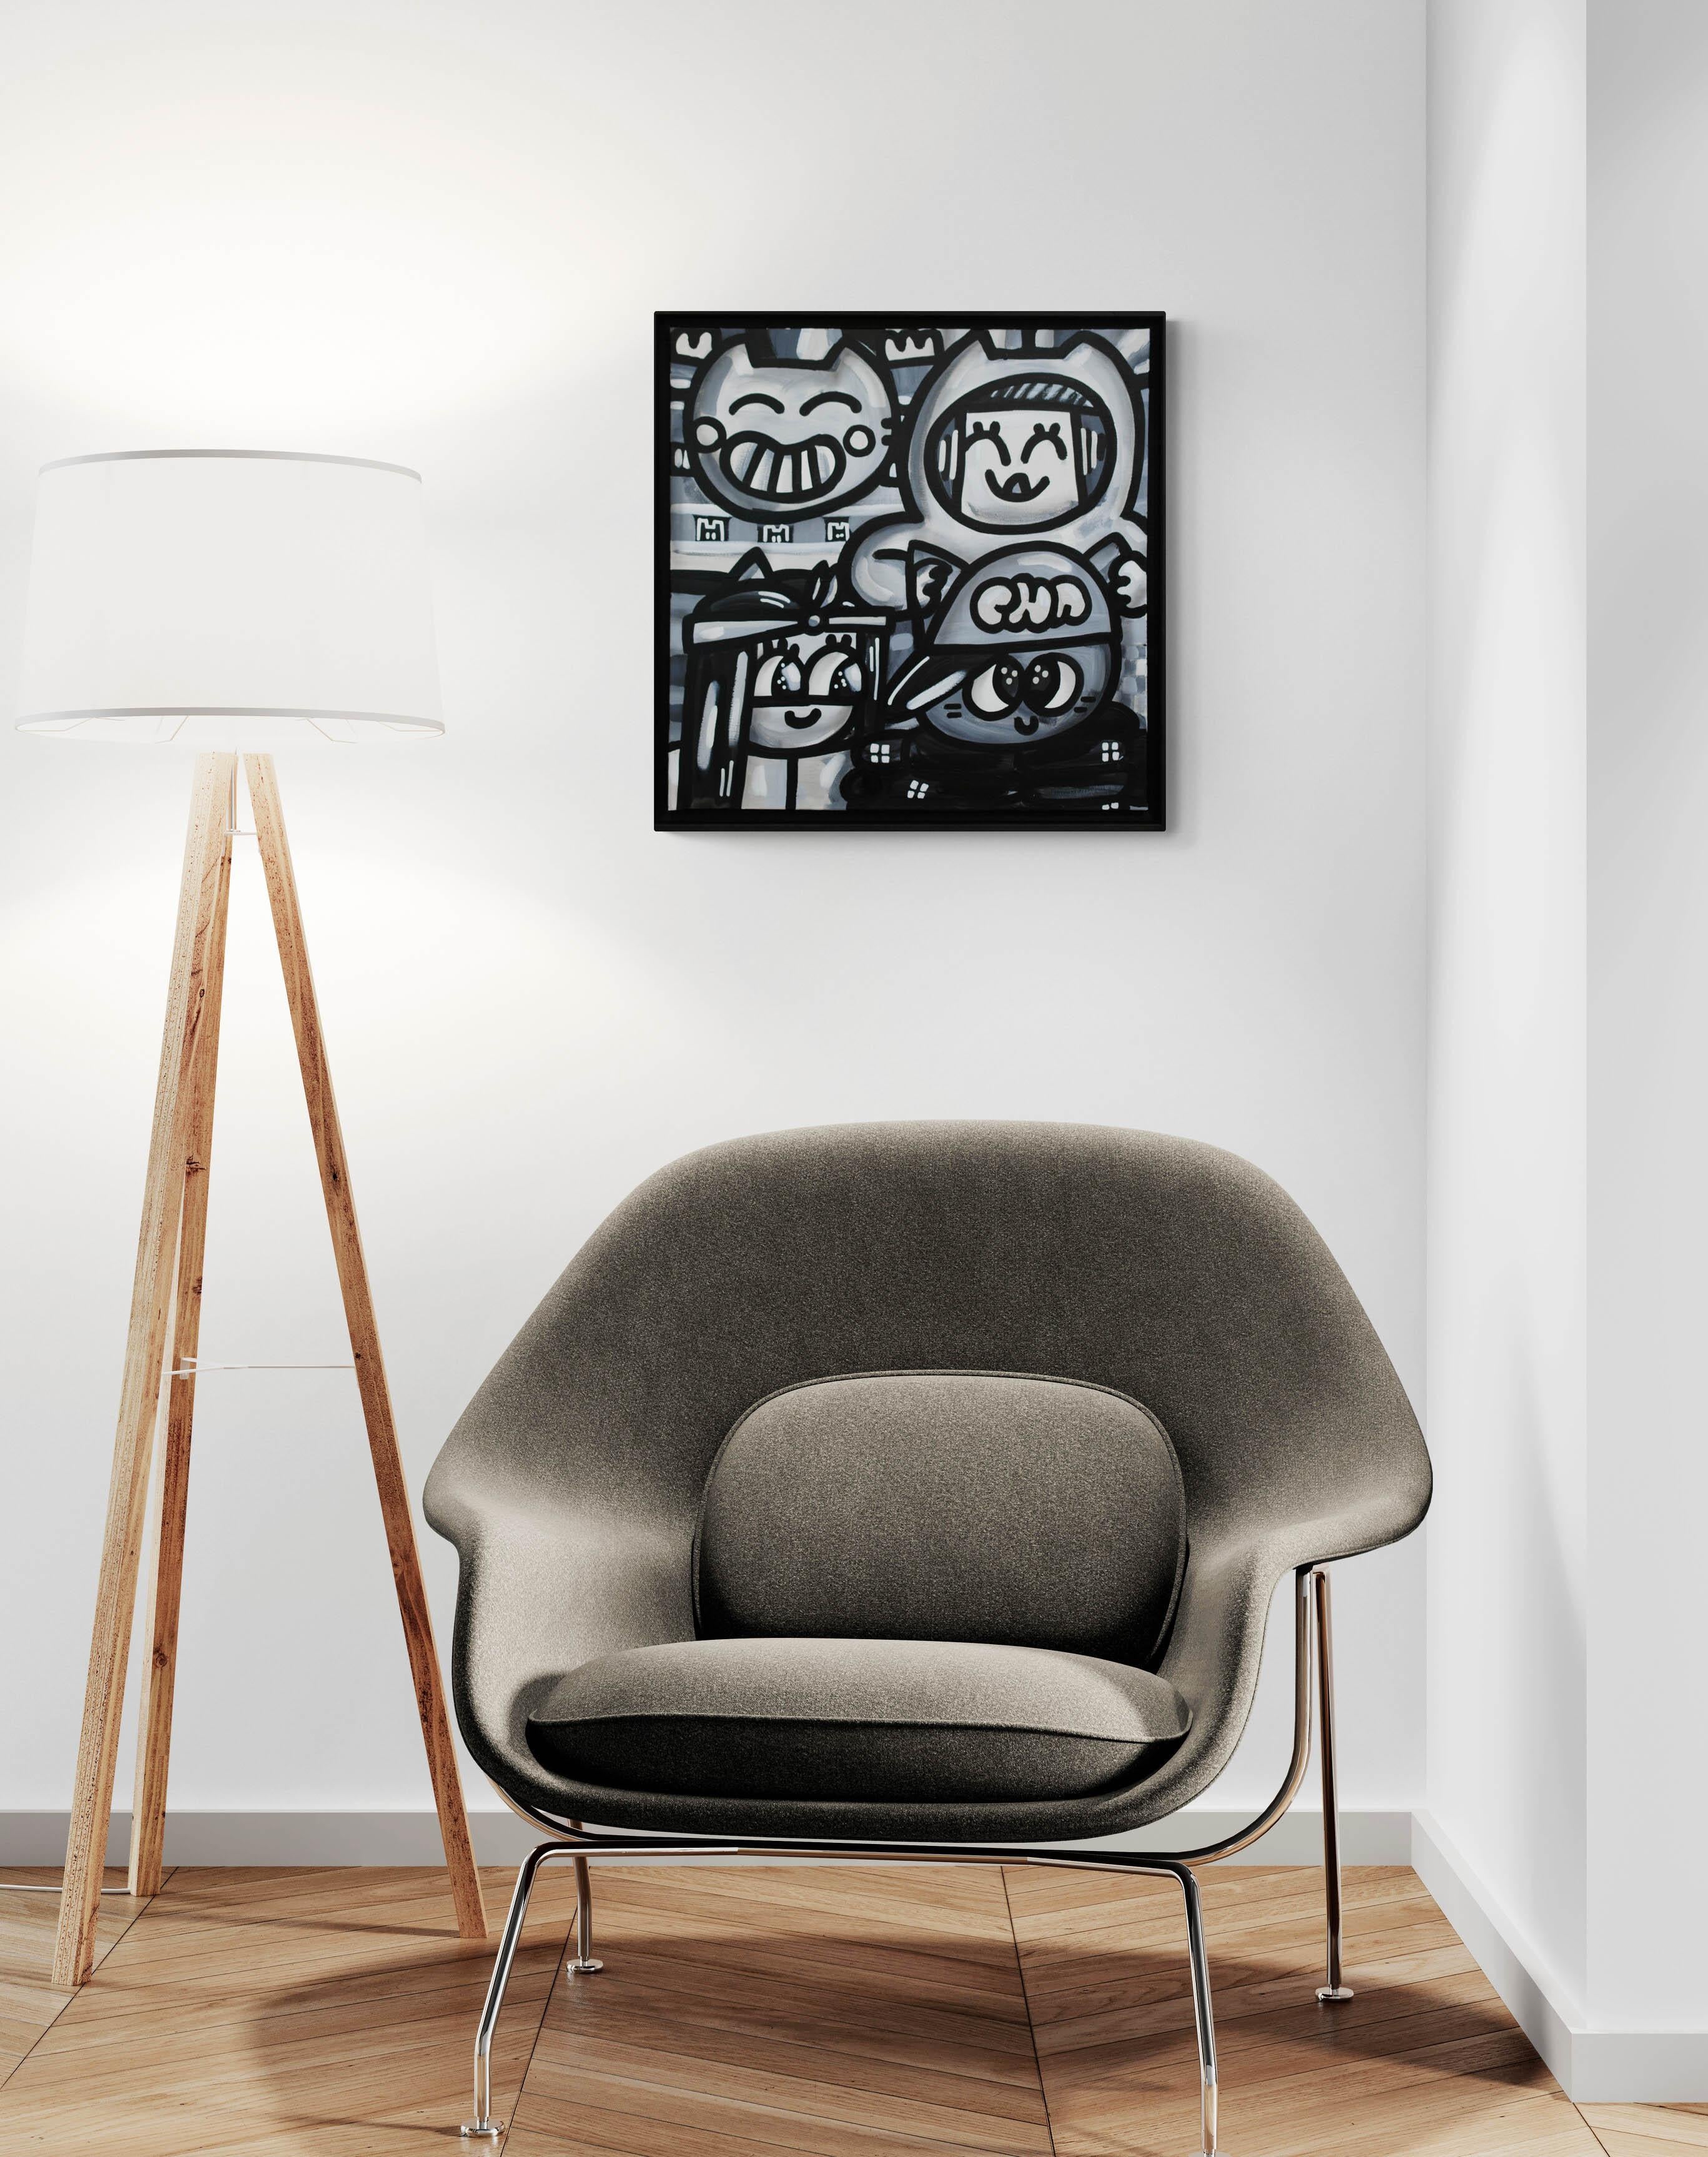 Acryl und Öl auf Leinwand
60 x 60 cm (23,6 x 23,6 Zoll)
Einzigartige Kunstwerke
Schwarzer Holzrahmen (65 x 65 x 4 cm) - (25,6 x 25,6 x 1,6 Zoll)
Signiert von der Künstlerin
Echtheitszertifikat